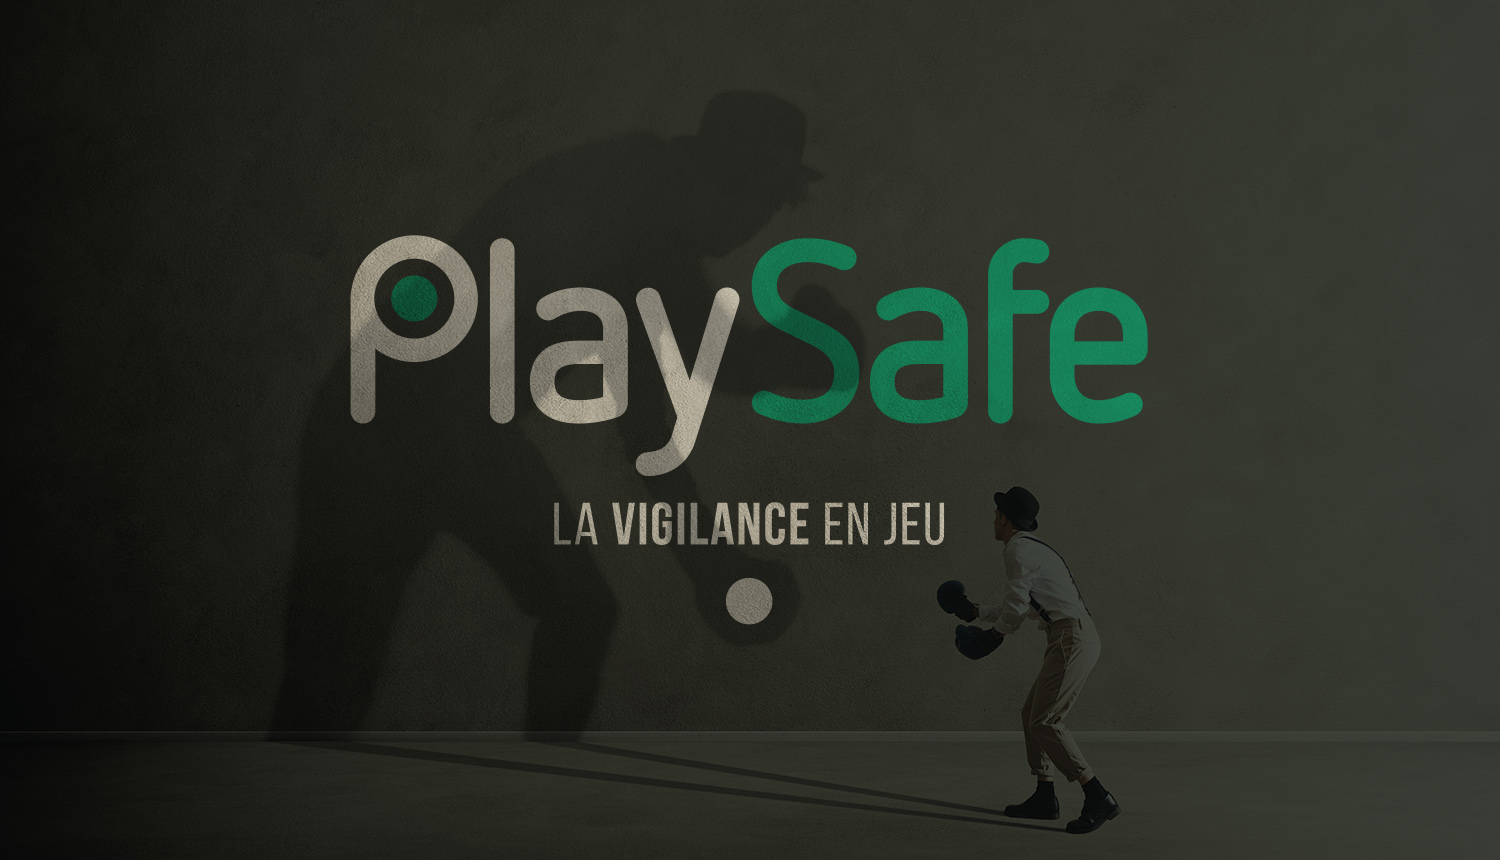 PlaySafe